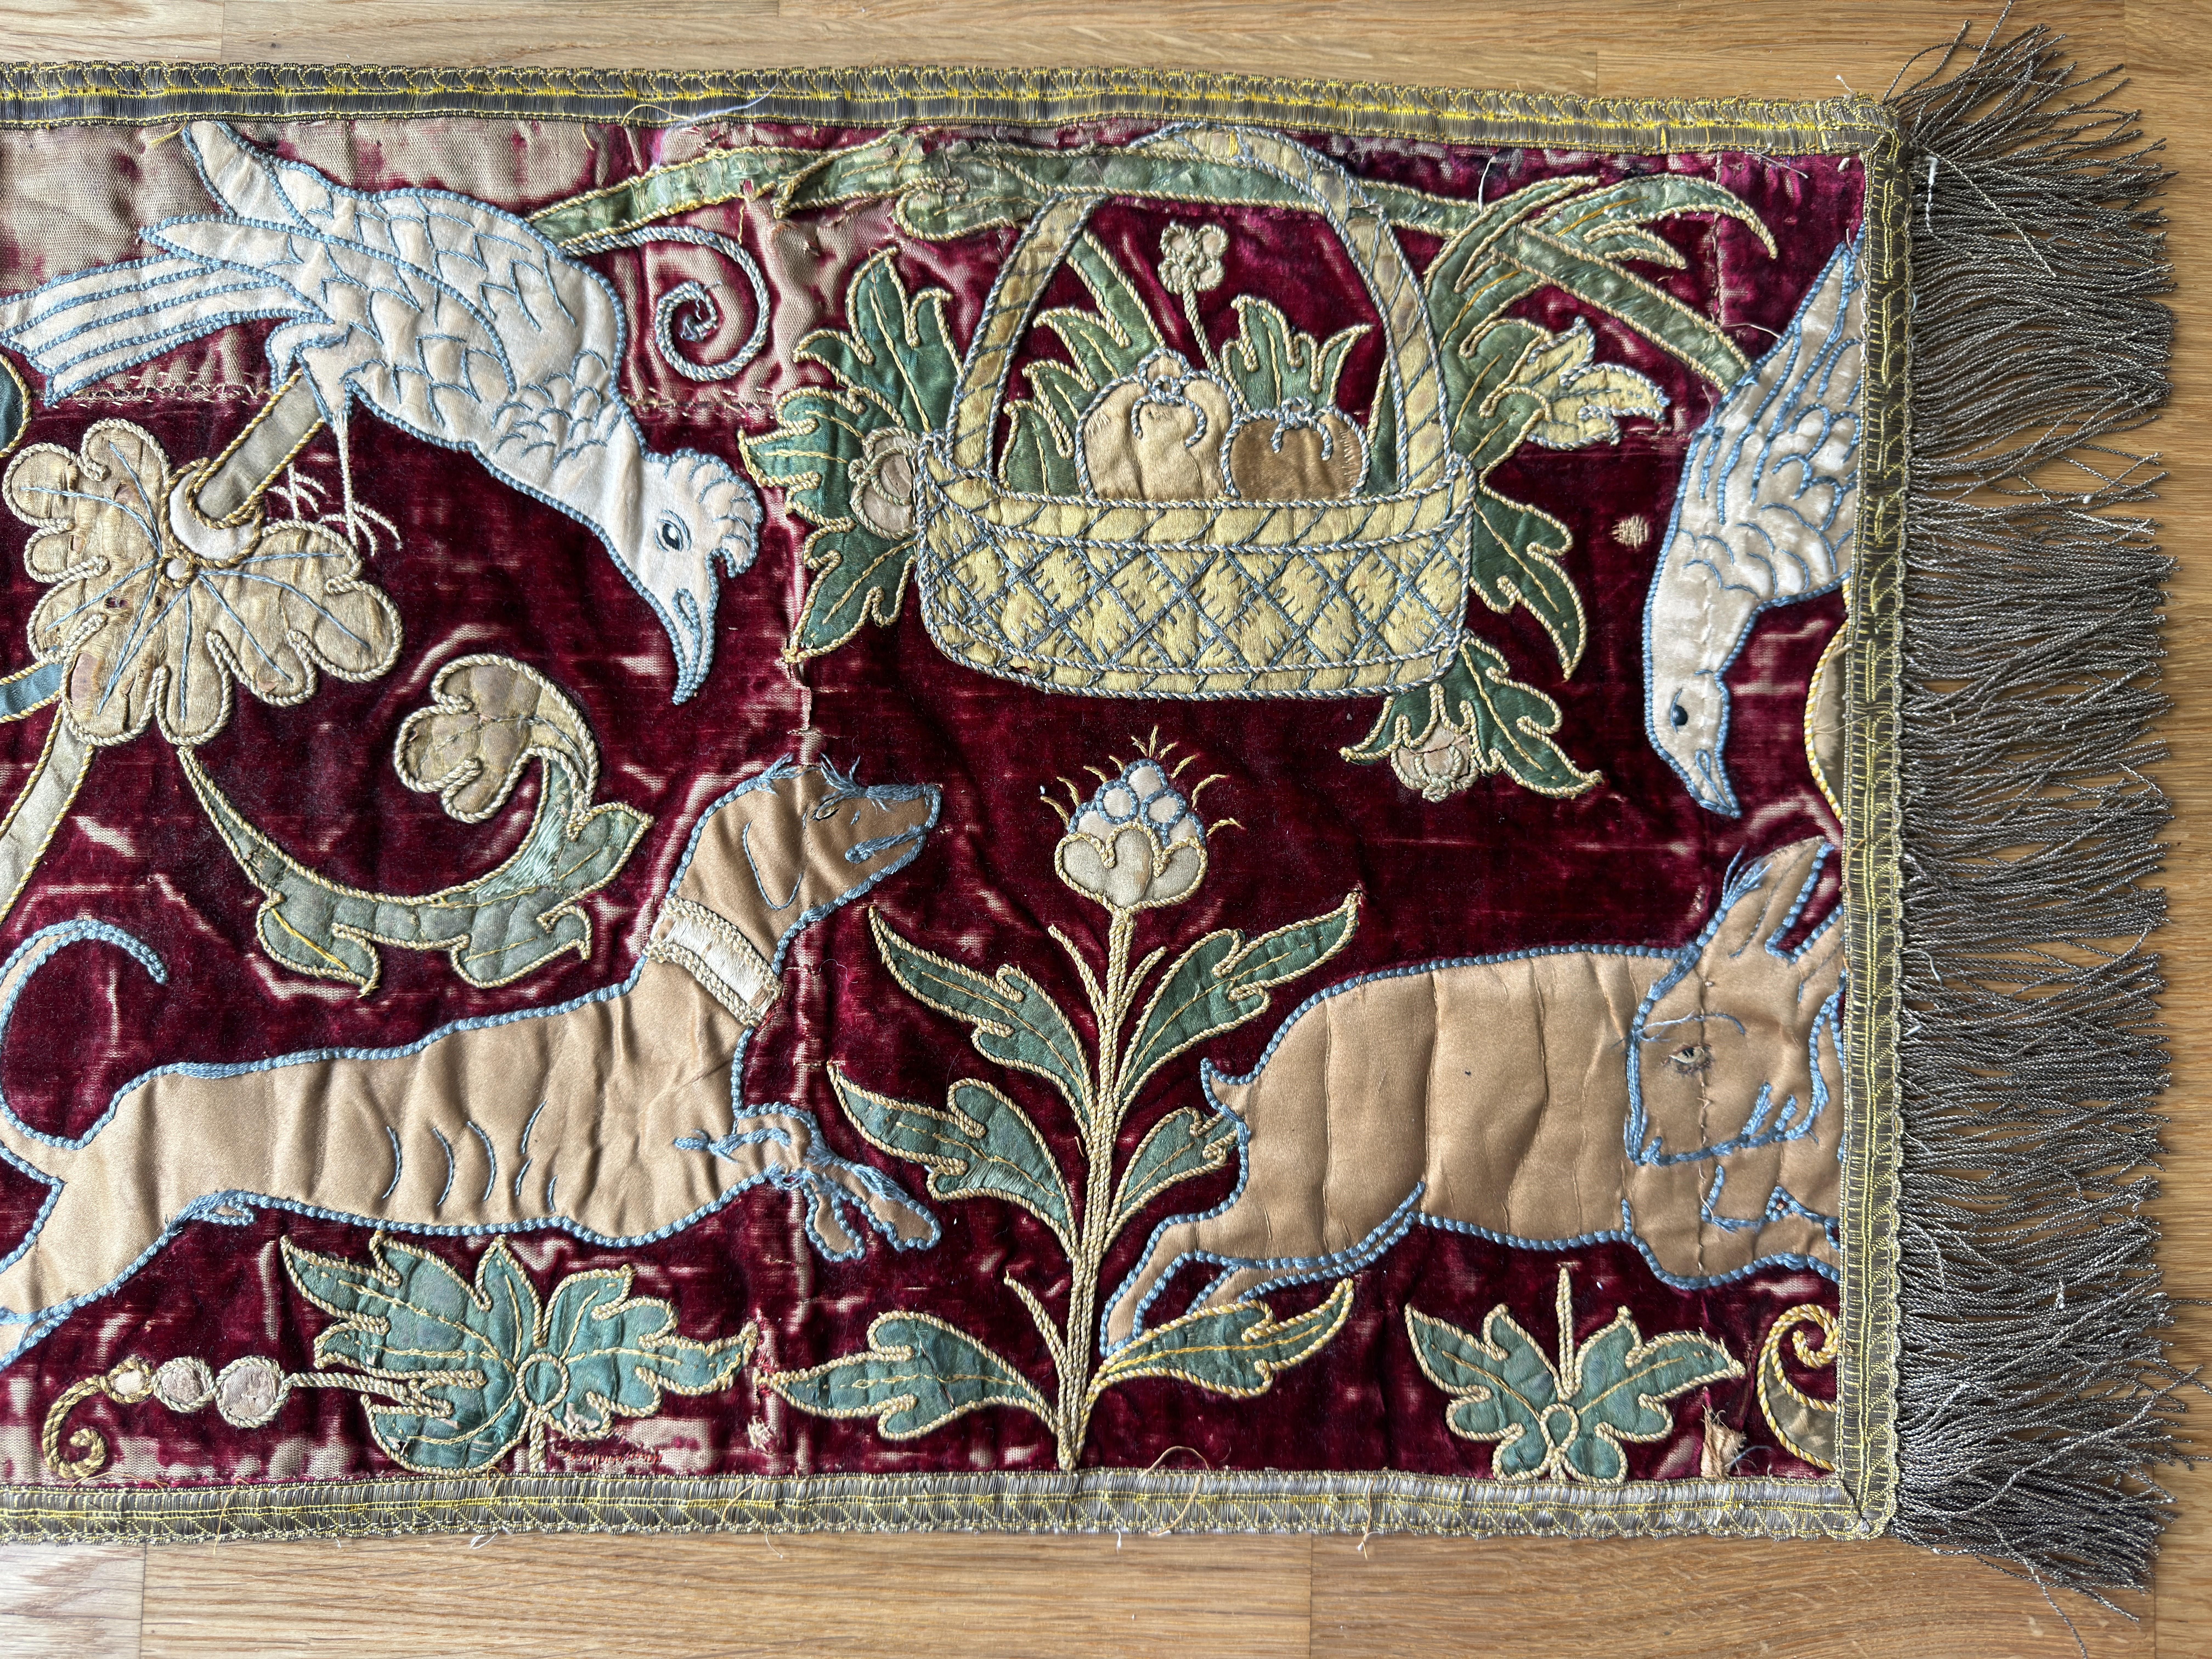 Hand-Woven 19th Century Silk & Velvet Panel For Sale